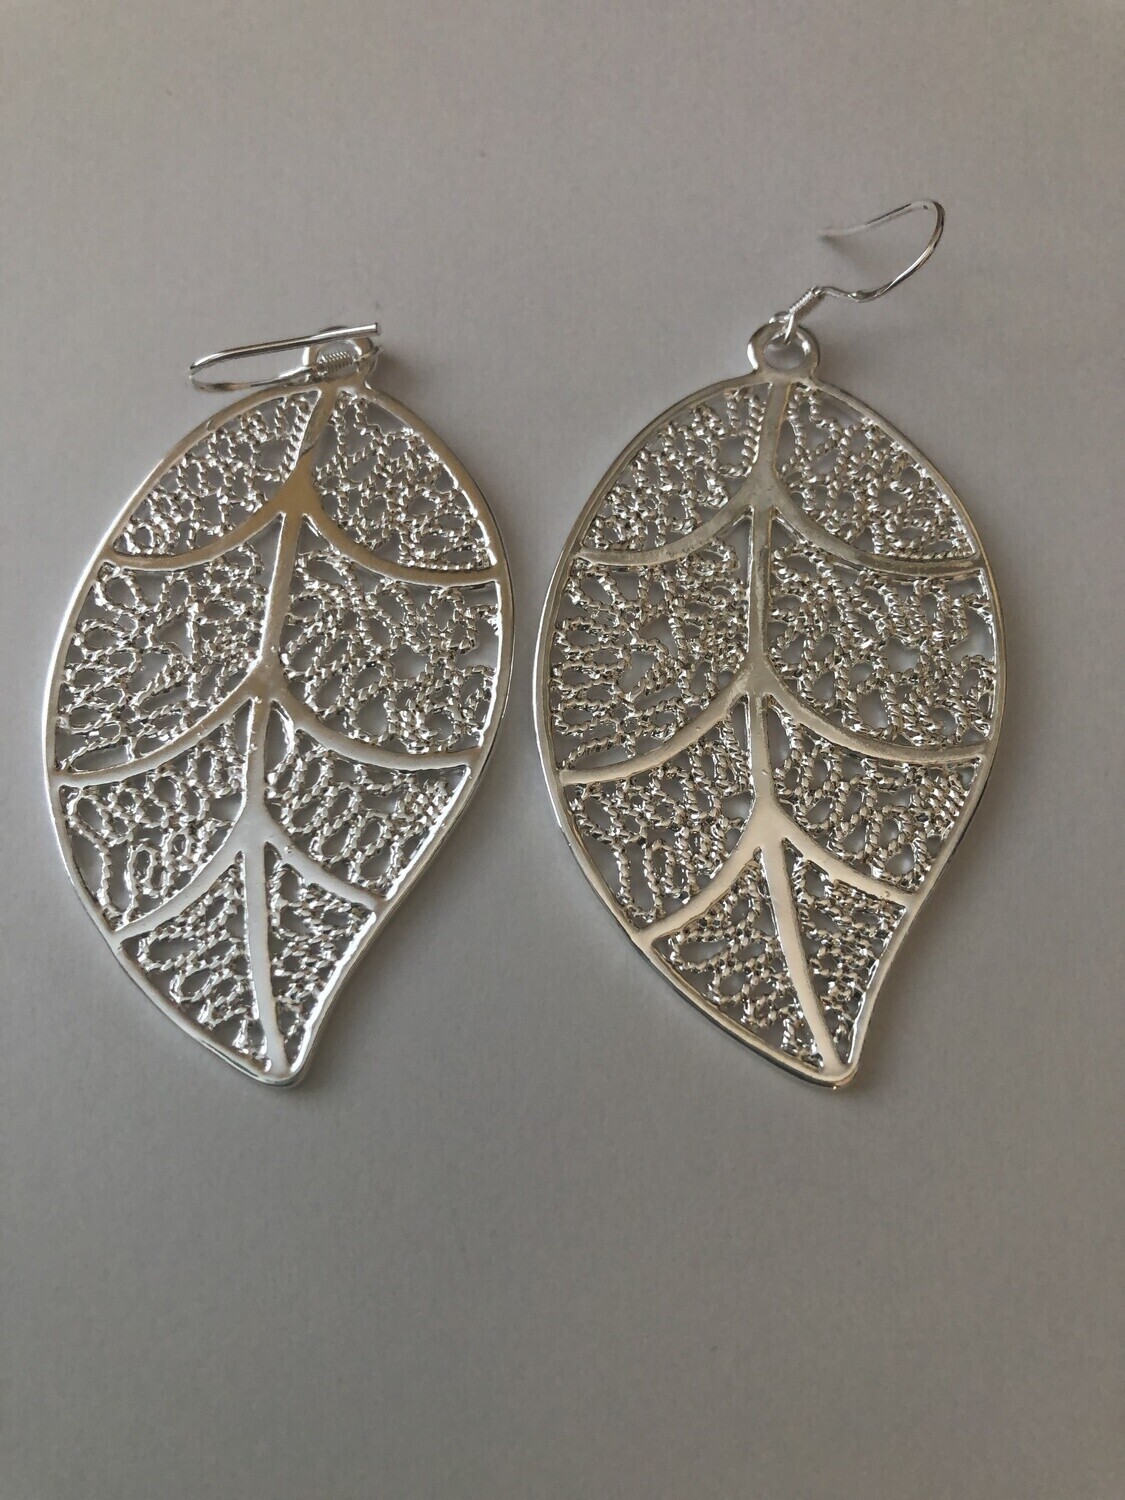 Earrings - Complex Leaf on ear wire .925 Sterling Silver